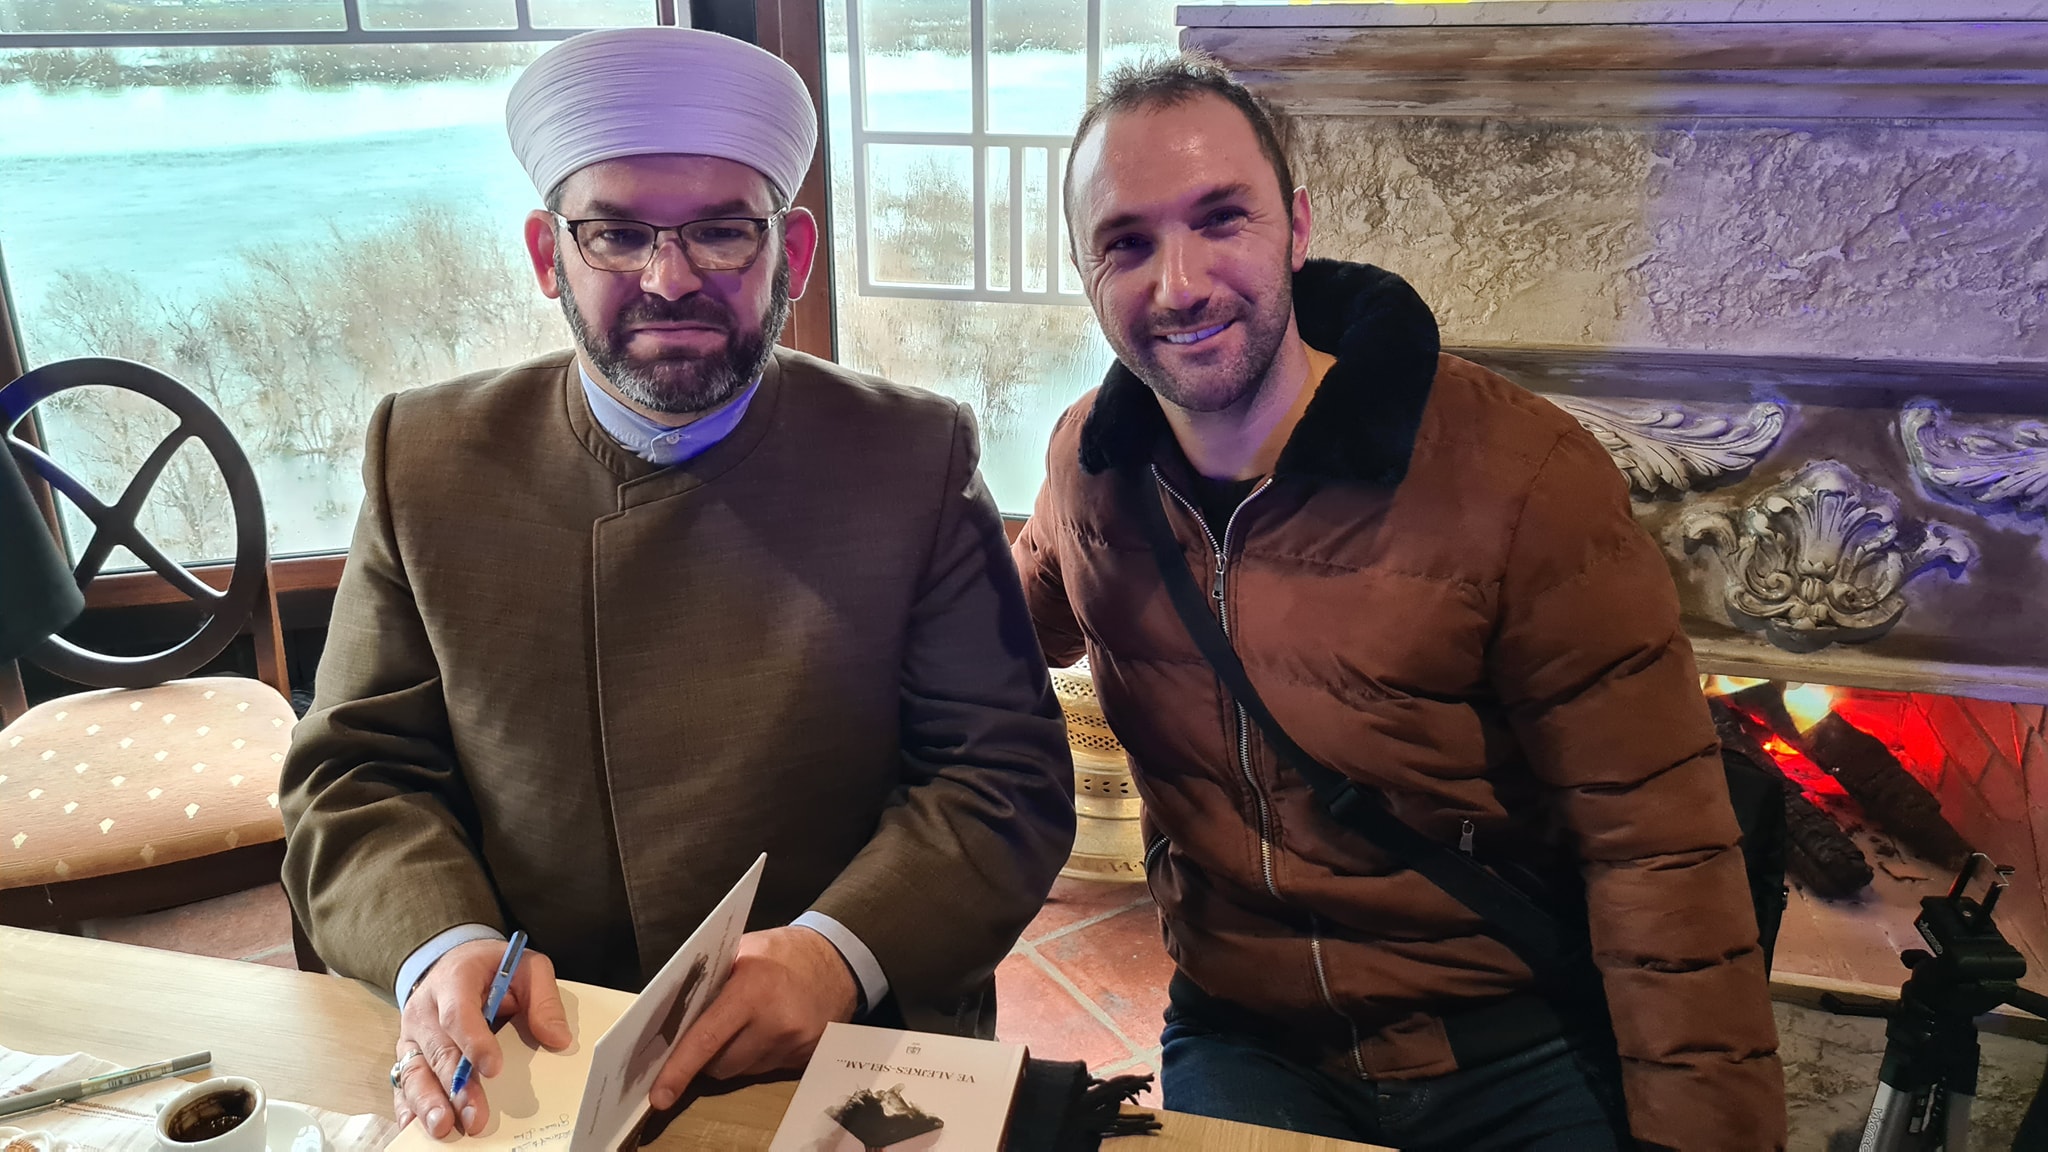 Libri i ri: “Ve alejkes-Selam…”, mbledh studiues e imamë në një bashkëbisedim intelektual